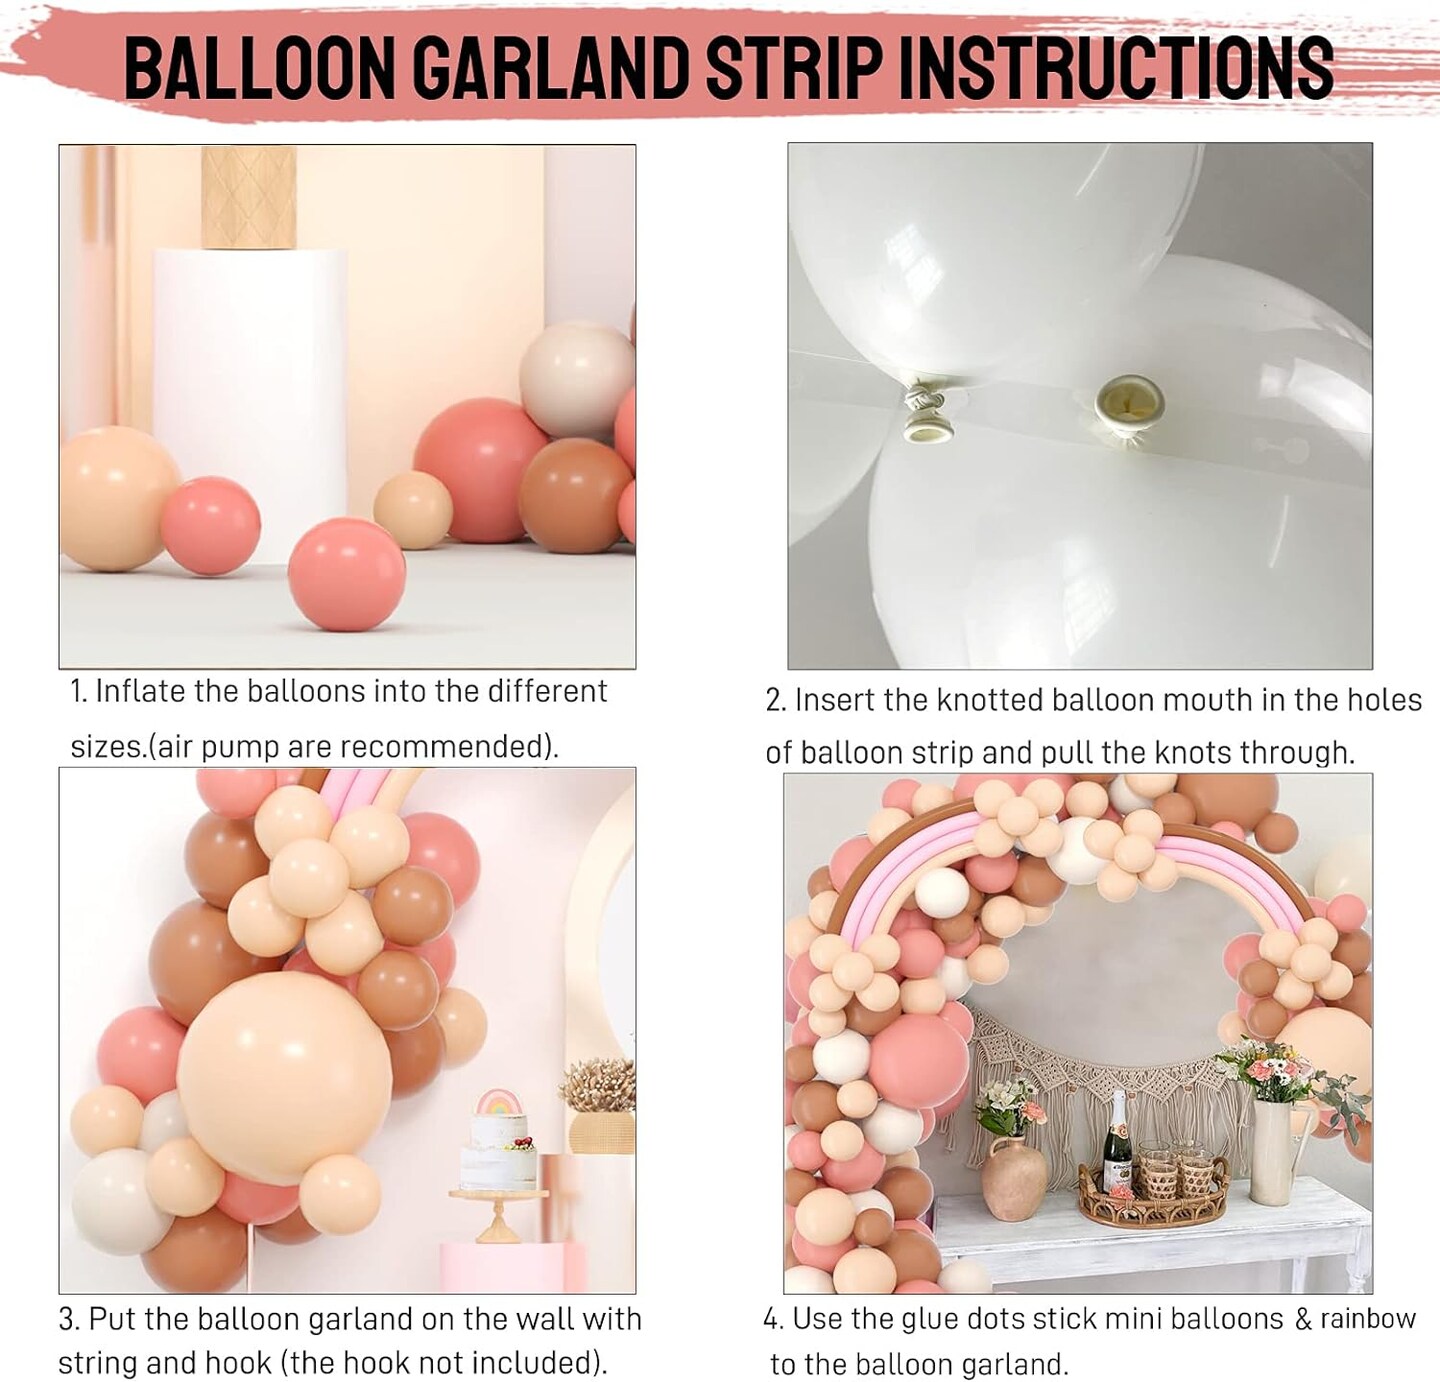 Boho Balloon Garland